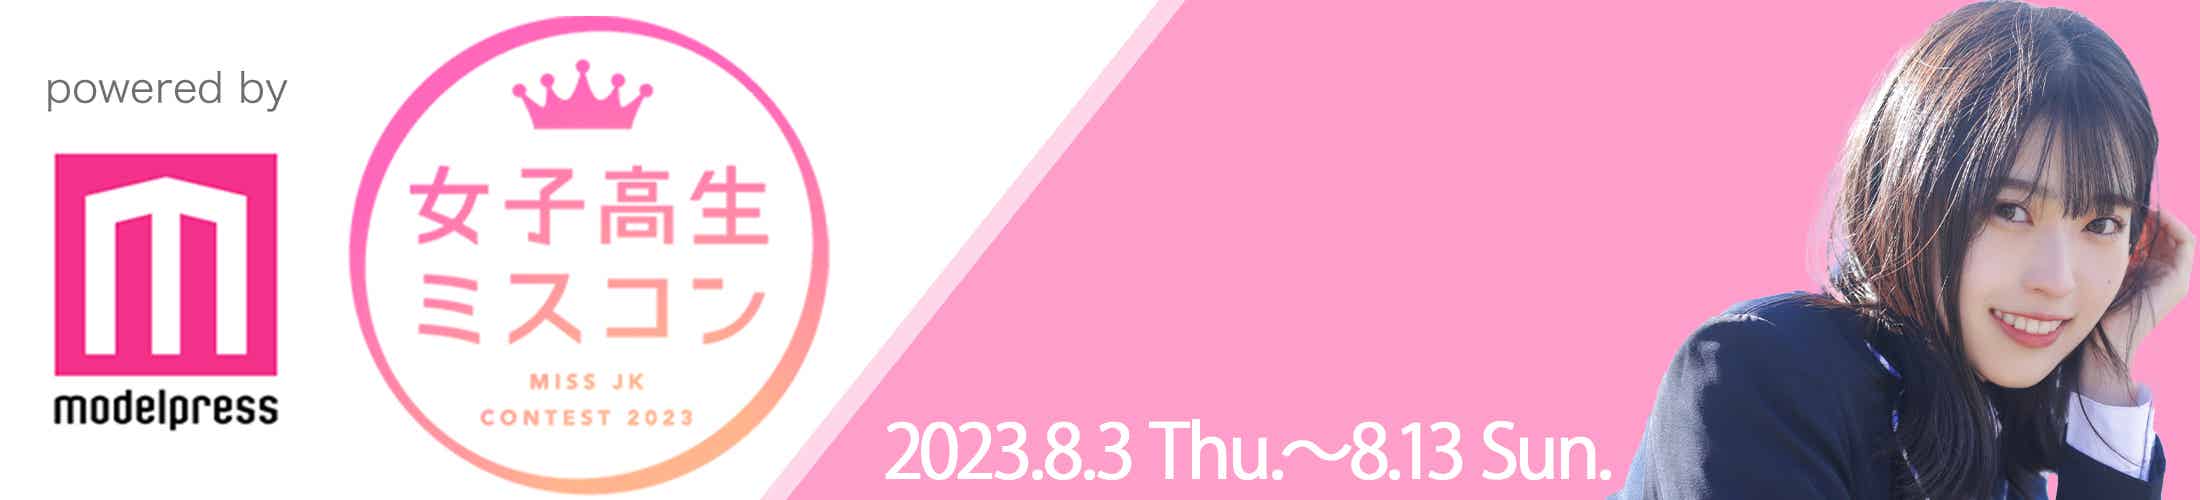 女子高生ミスコン 2023 MISS JK CONTEST 2023 powered by modelpresss